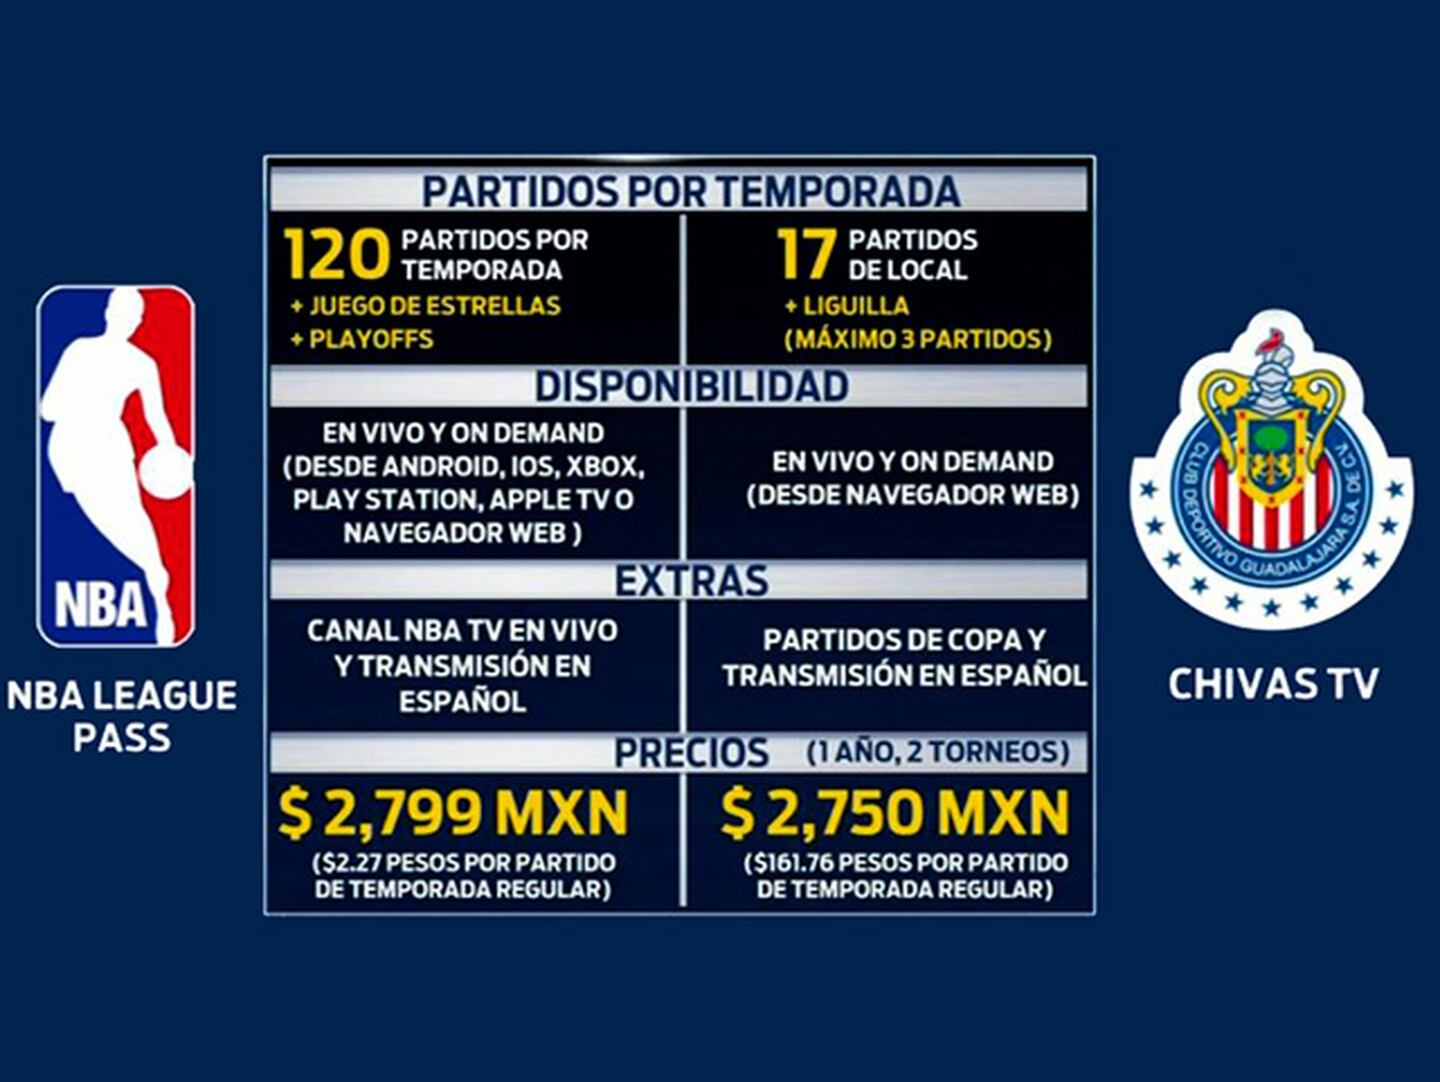 ¿Contratarías Chivas TV o TODA la NBA? ¡Mira el comparativo!